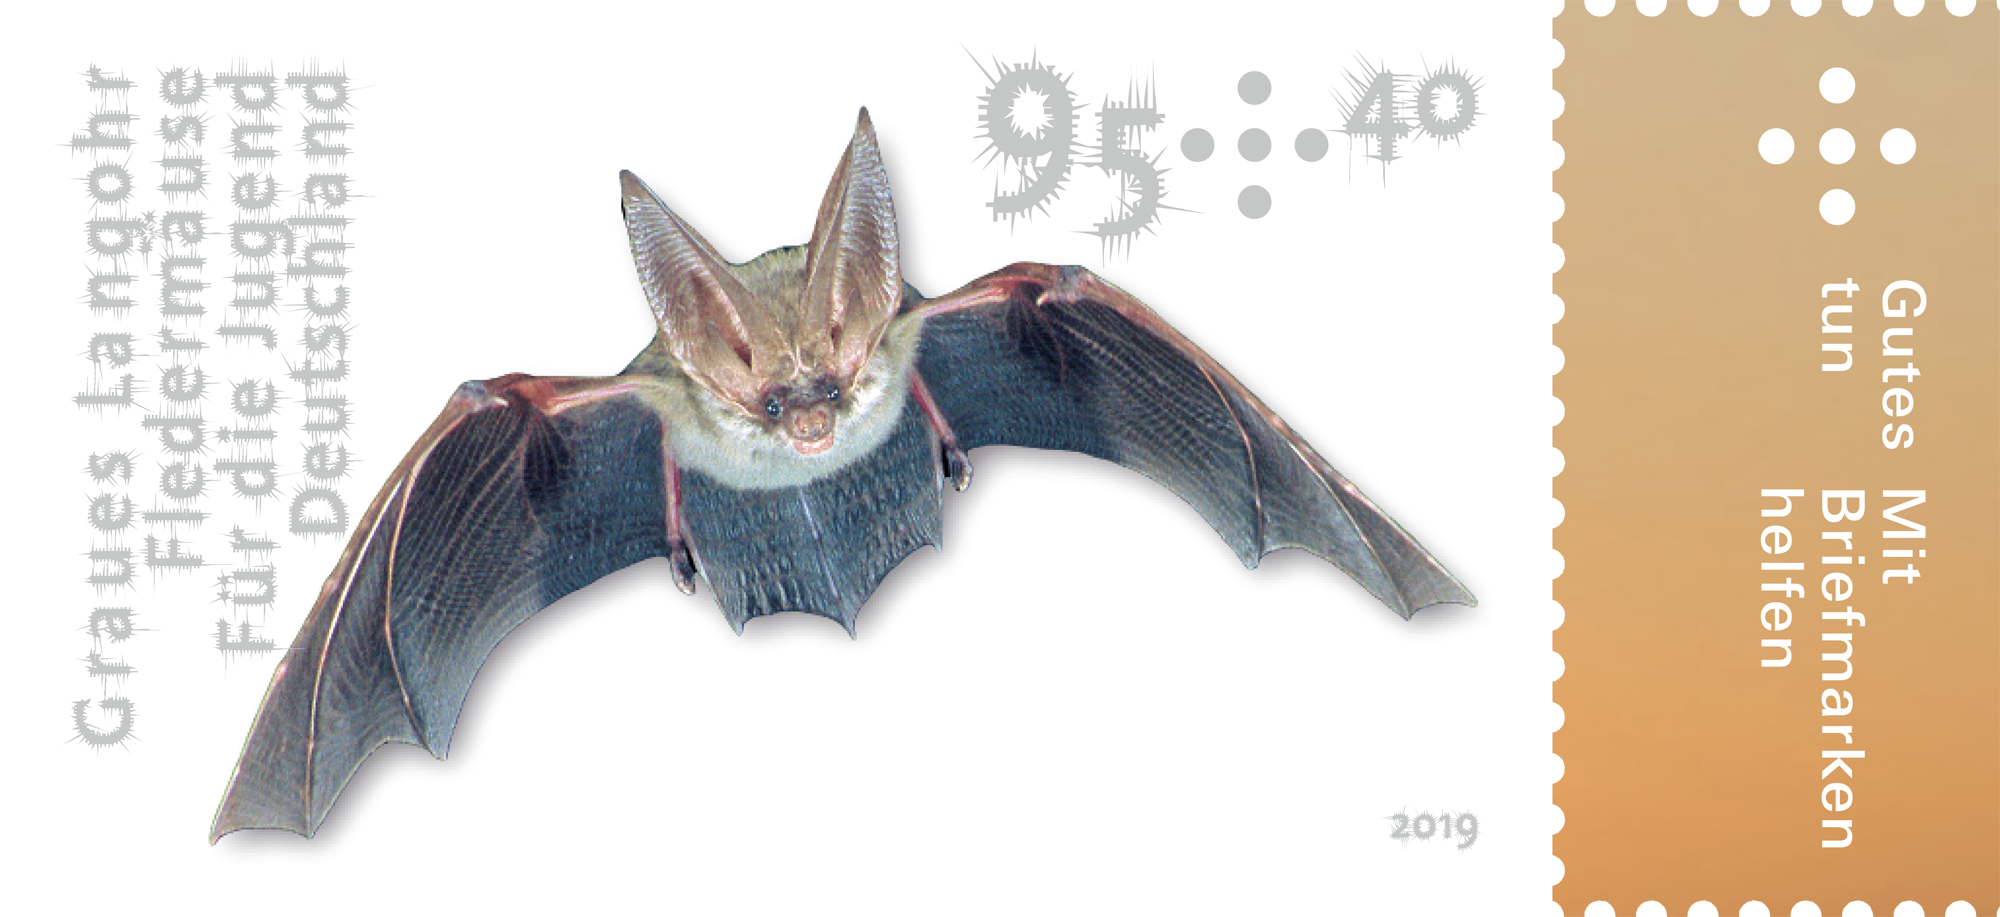 Briefmarke im Wert von 95 Cent mit Bild einer Fledermaus